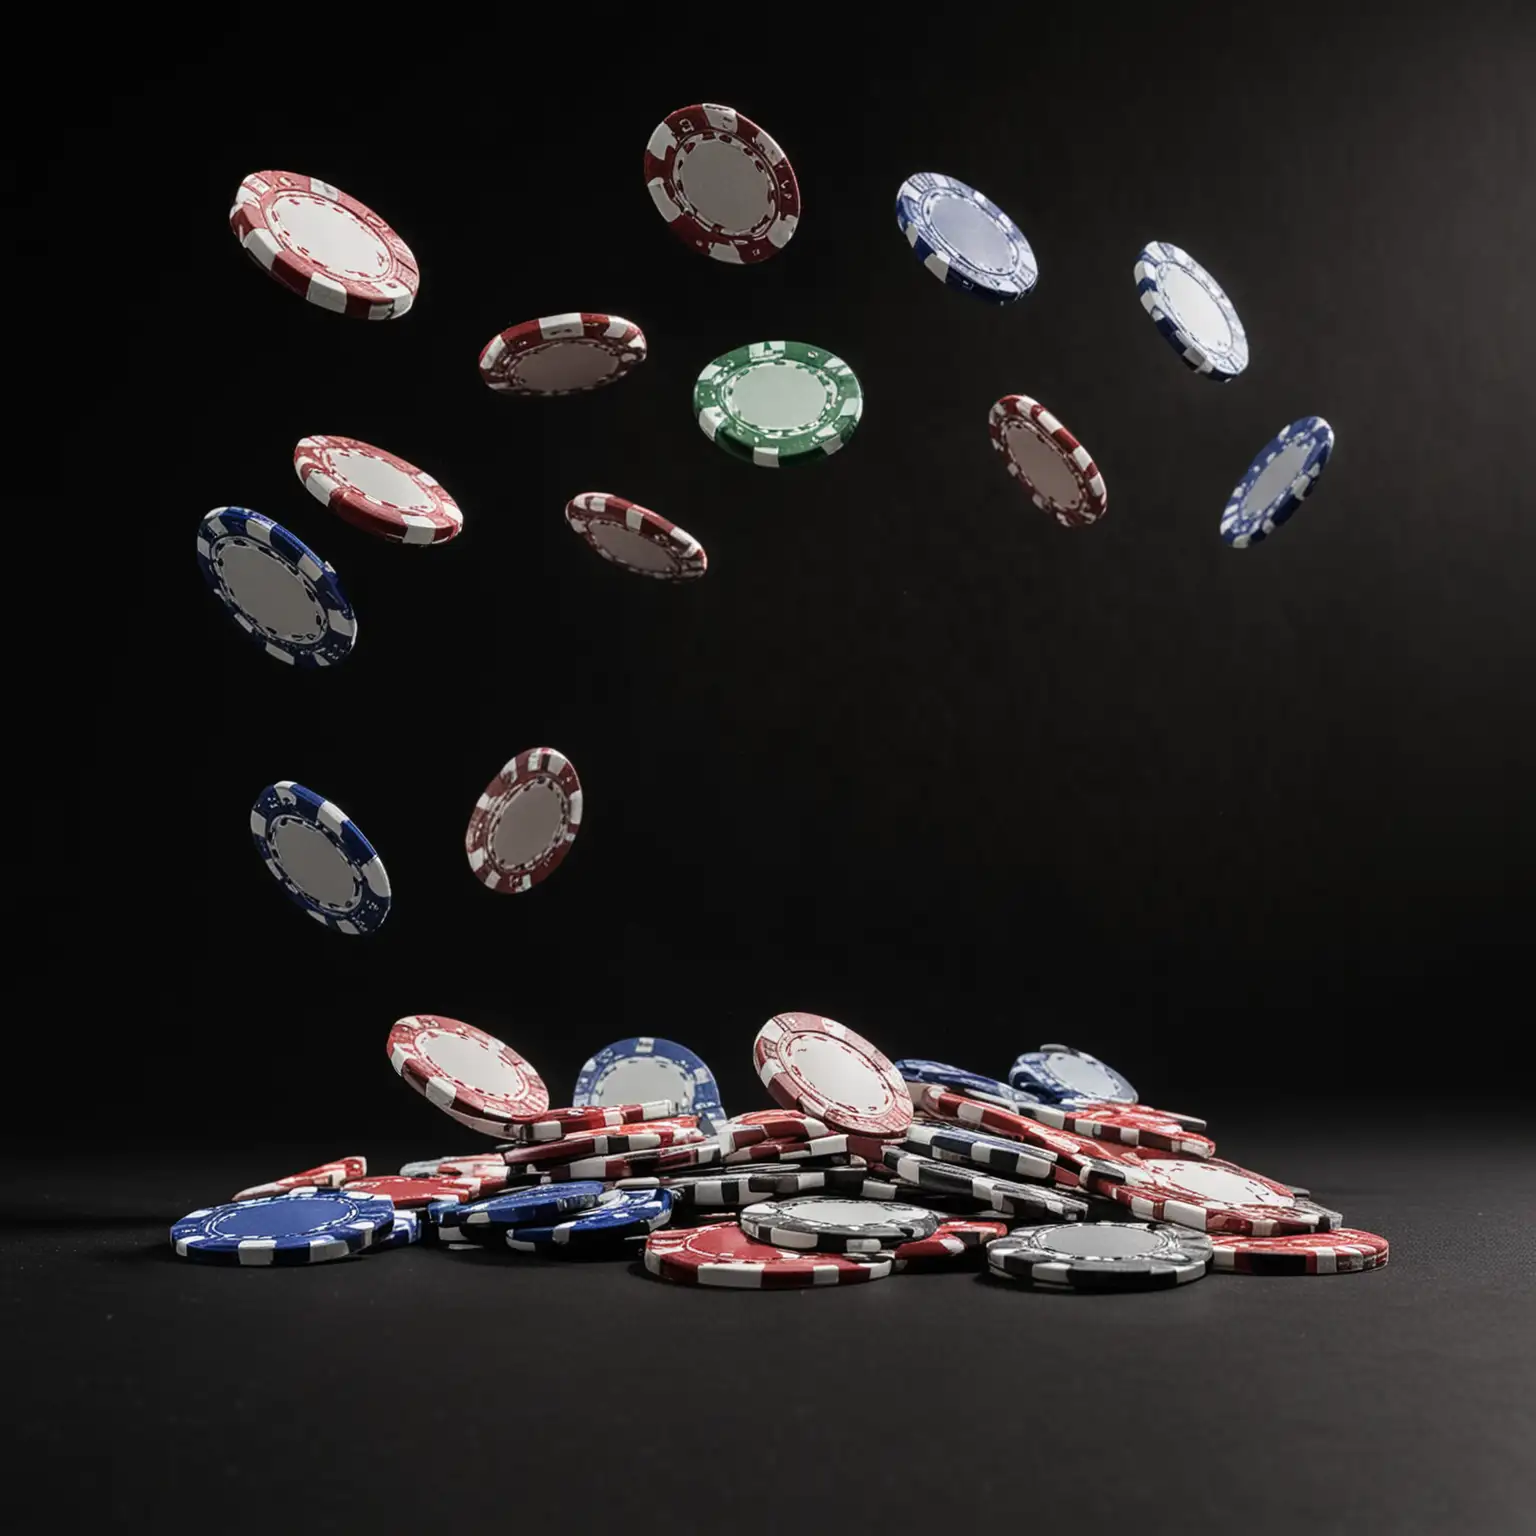 ten poker chips falling against black background